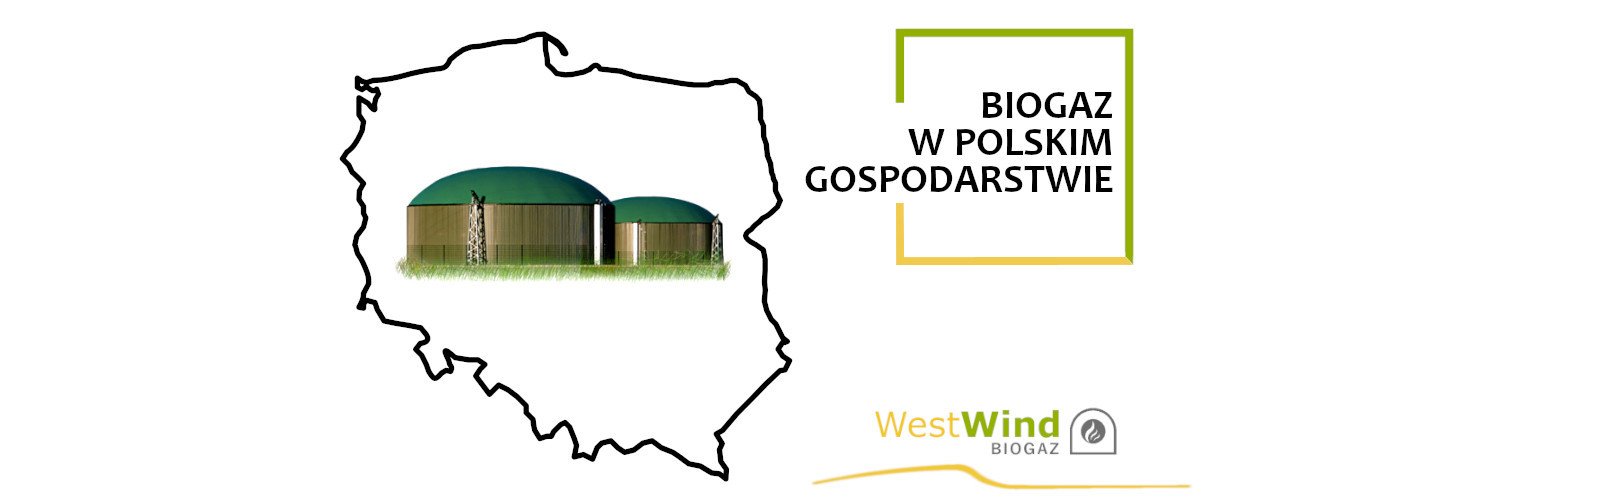 Biogaz w polskim gospodarstwie